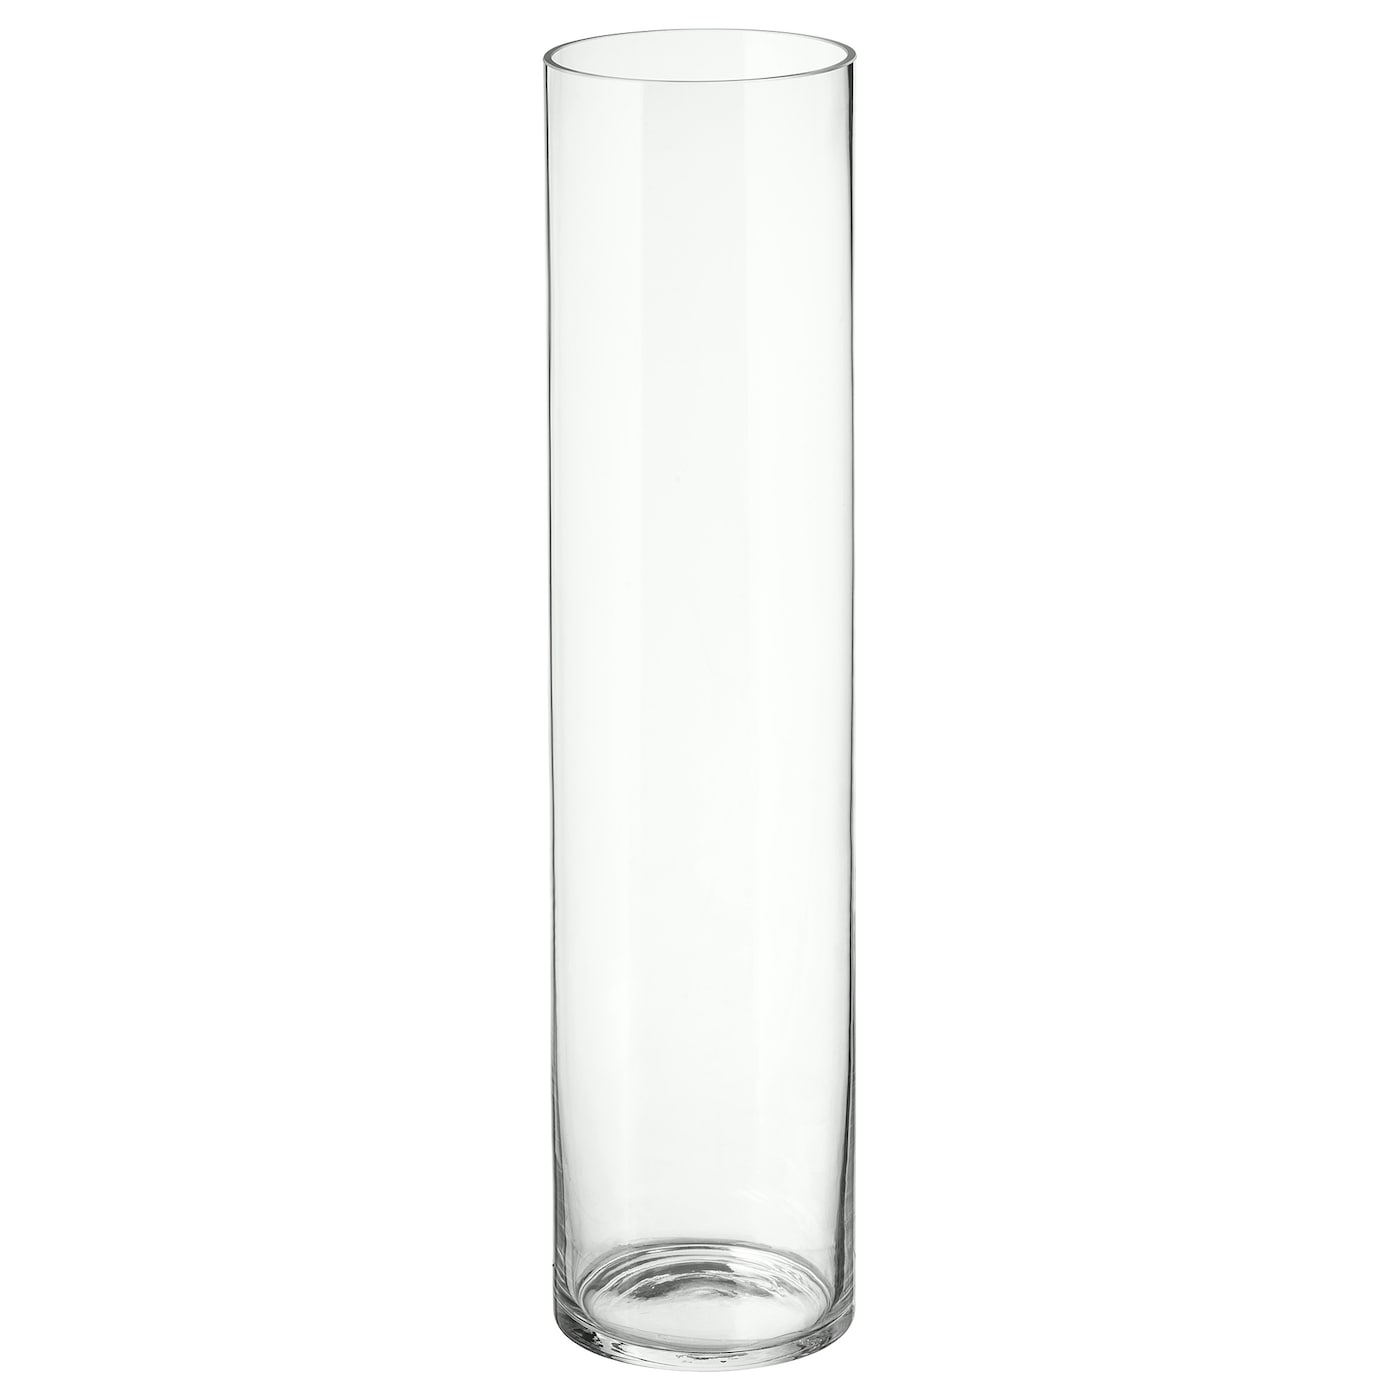 CYLINDER 西灵德花瓶透明玻璃- IKEA